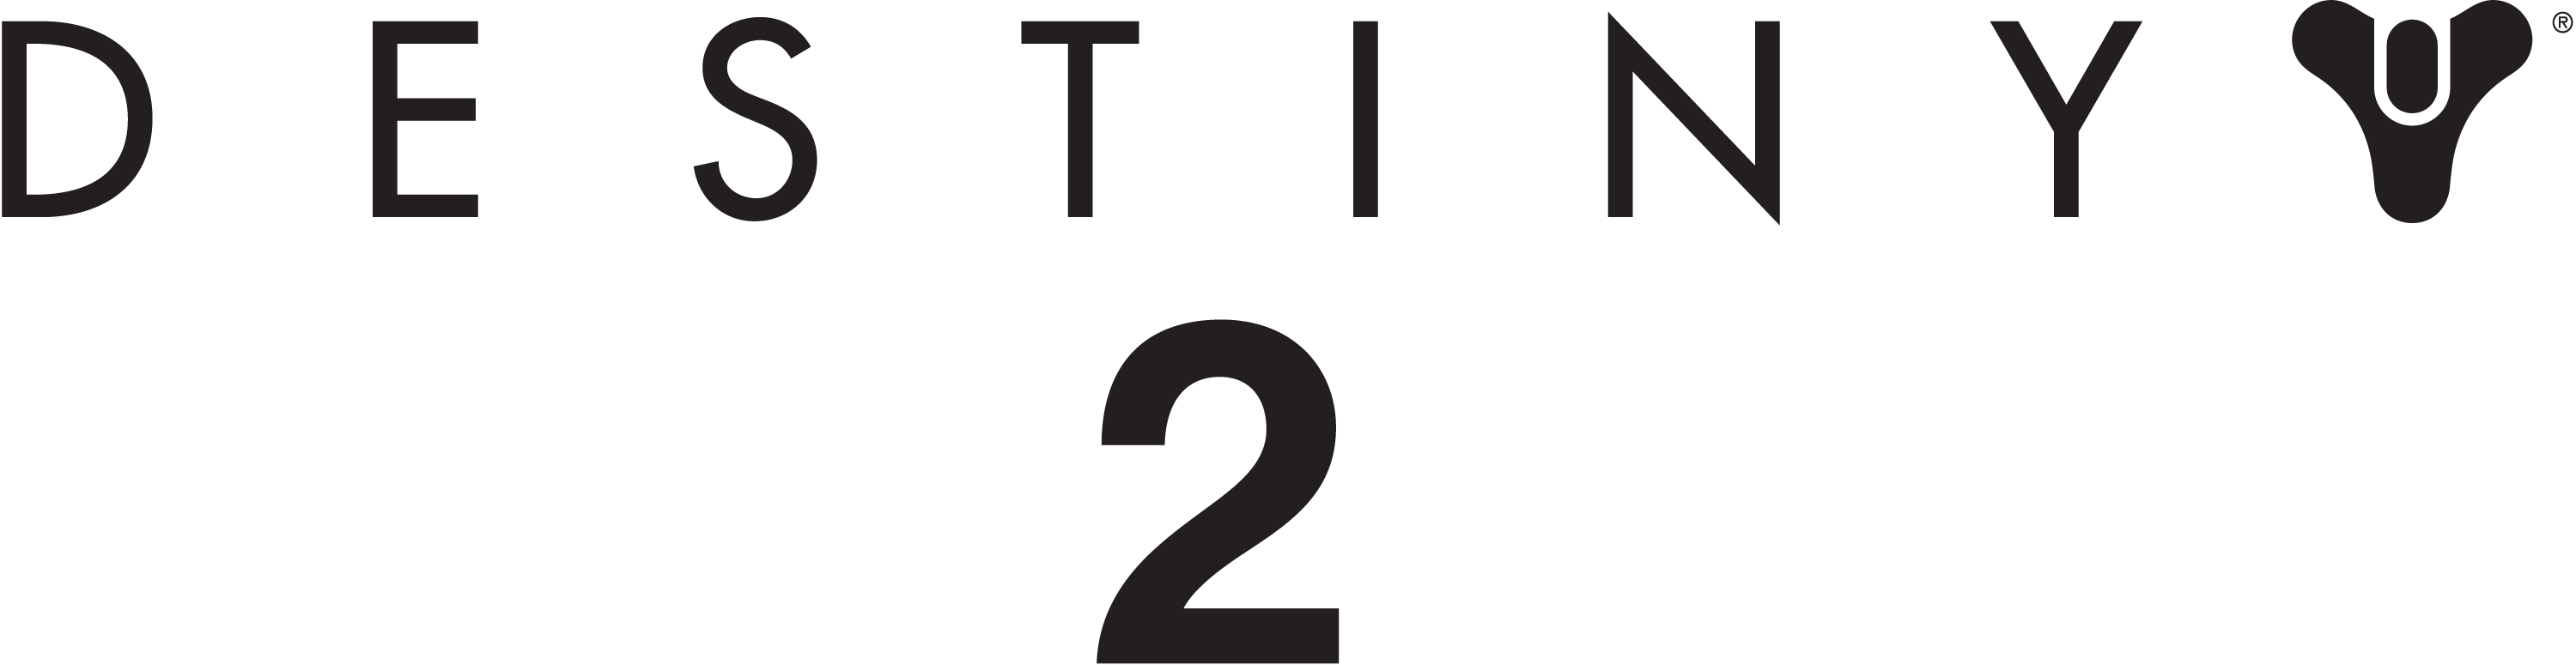 Destiny 2 Guide - Destiny 2 Logo Png (3000x775)